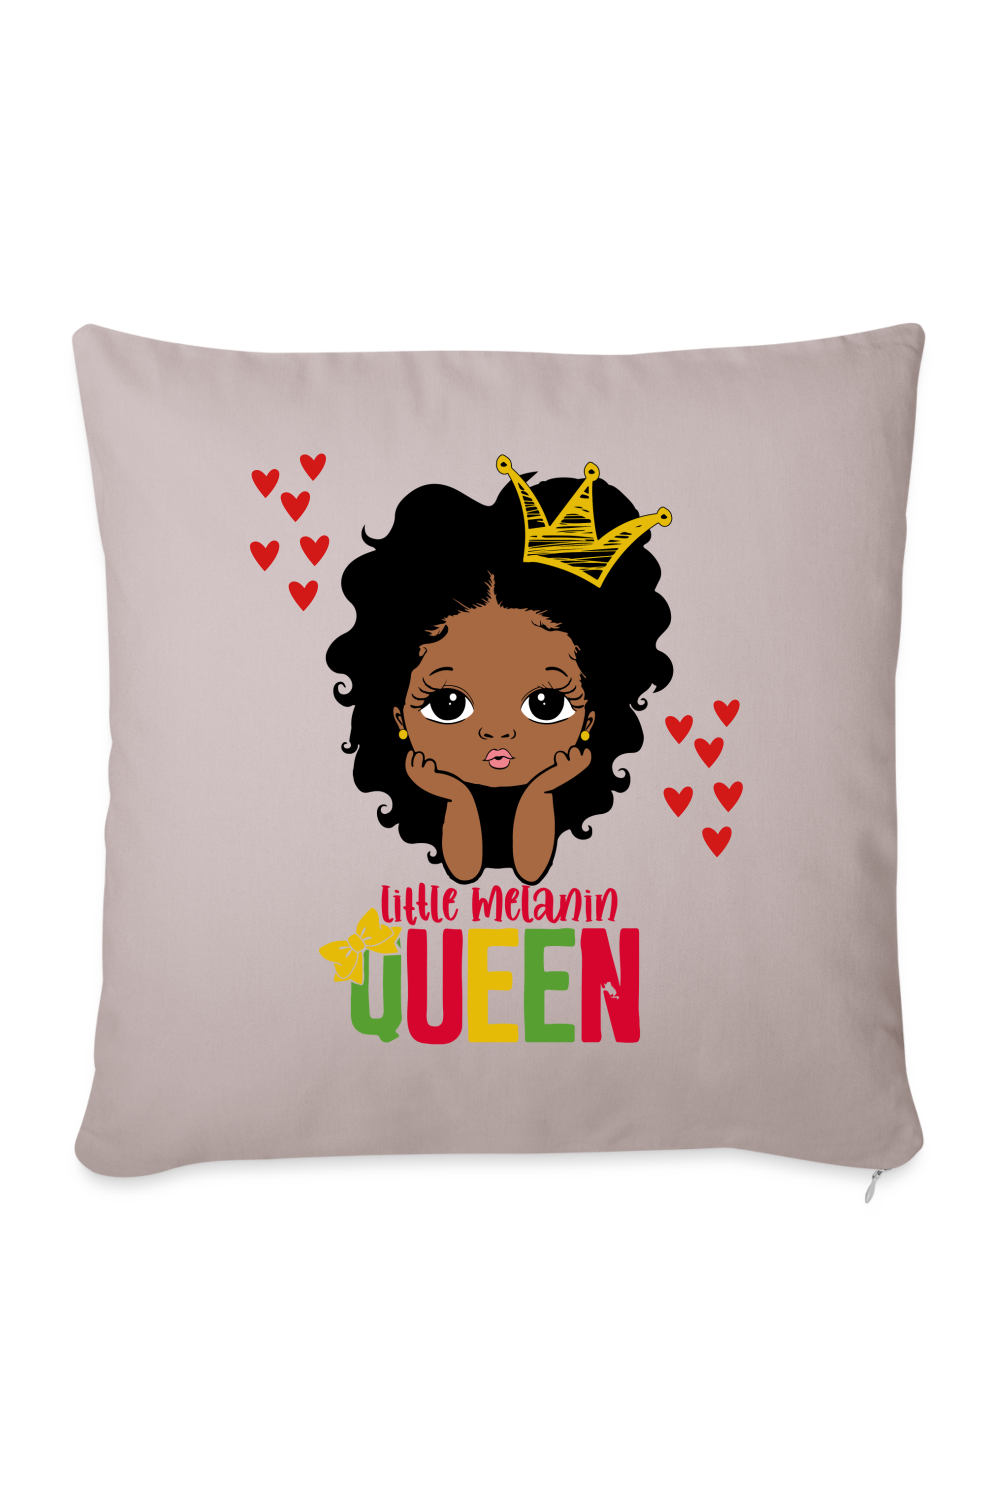 Little Melanin Queen Throw Pillow Cover 18” x 18” - light taupe - NicholesGifts.online